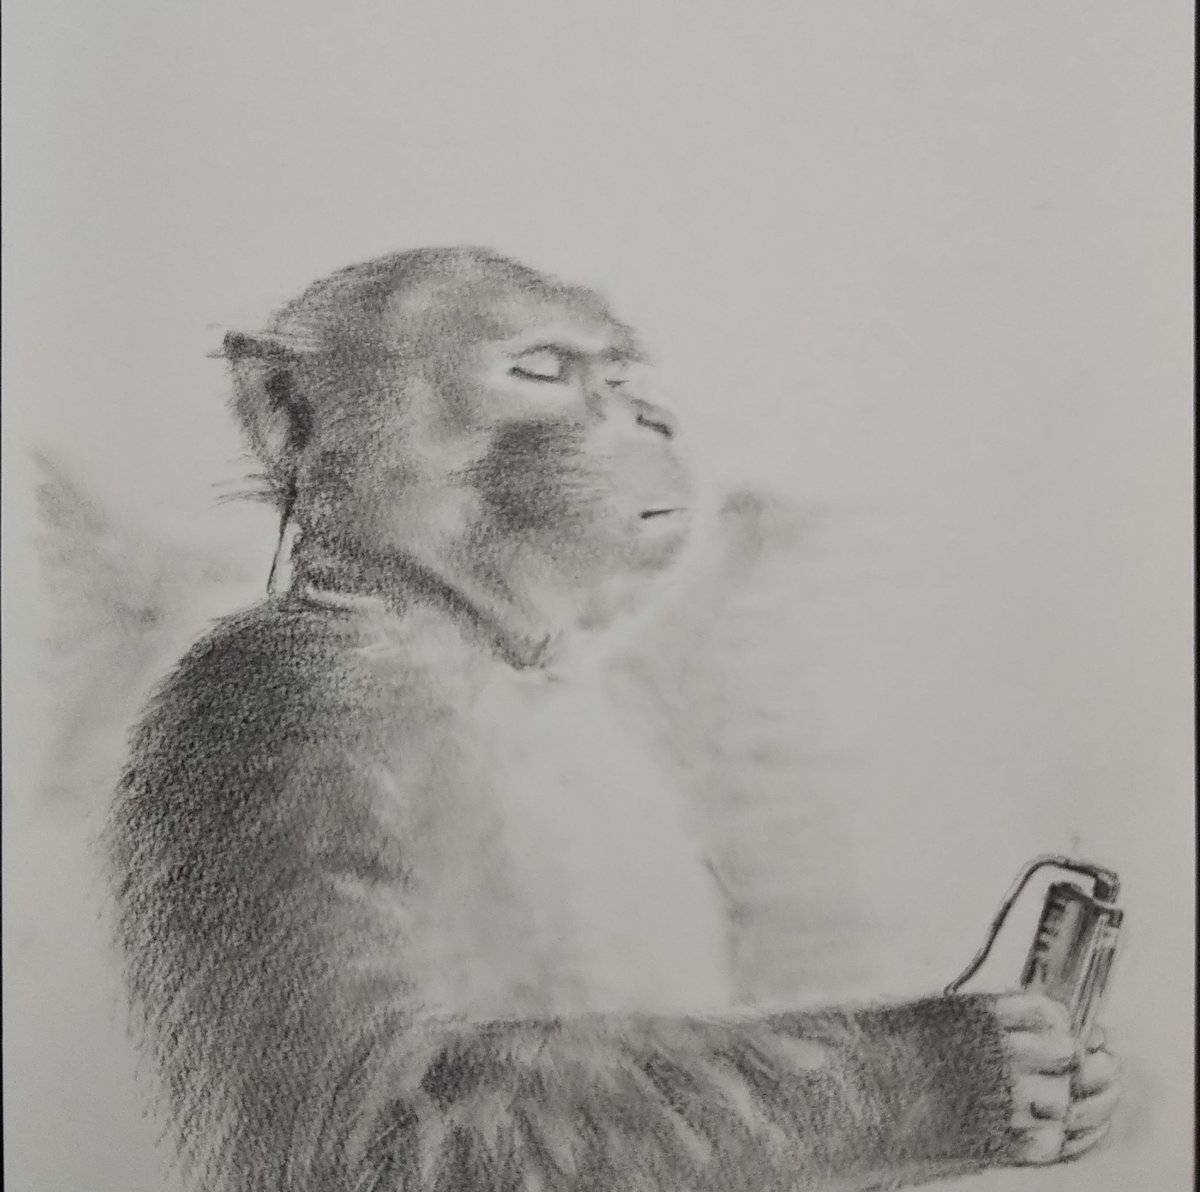 #DeadLeaf がながれると 頭の中に必ず昔のウォークマンのCMのお猿さんが現れて 一緒に聞き入っている。

#POPVIRUS
#お絵描き #イラスト #鉛筆画 